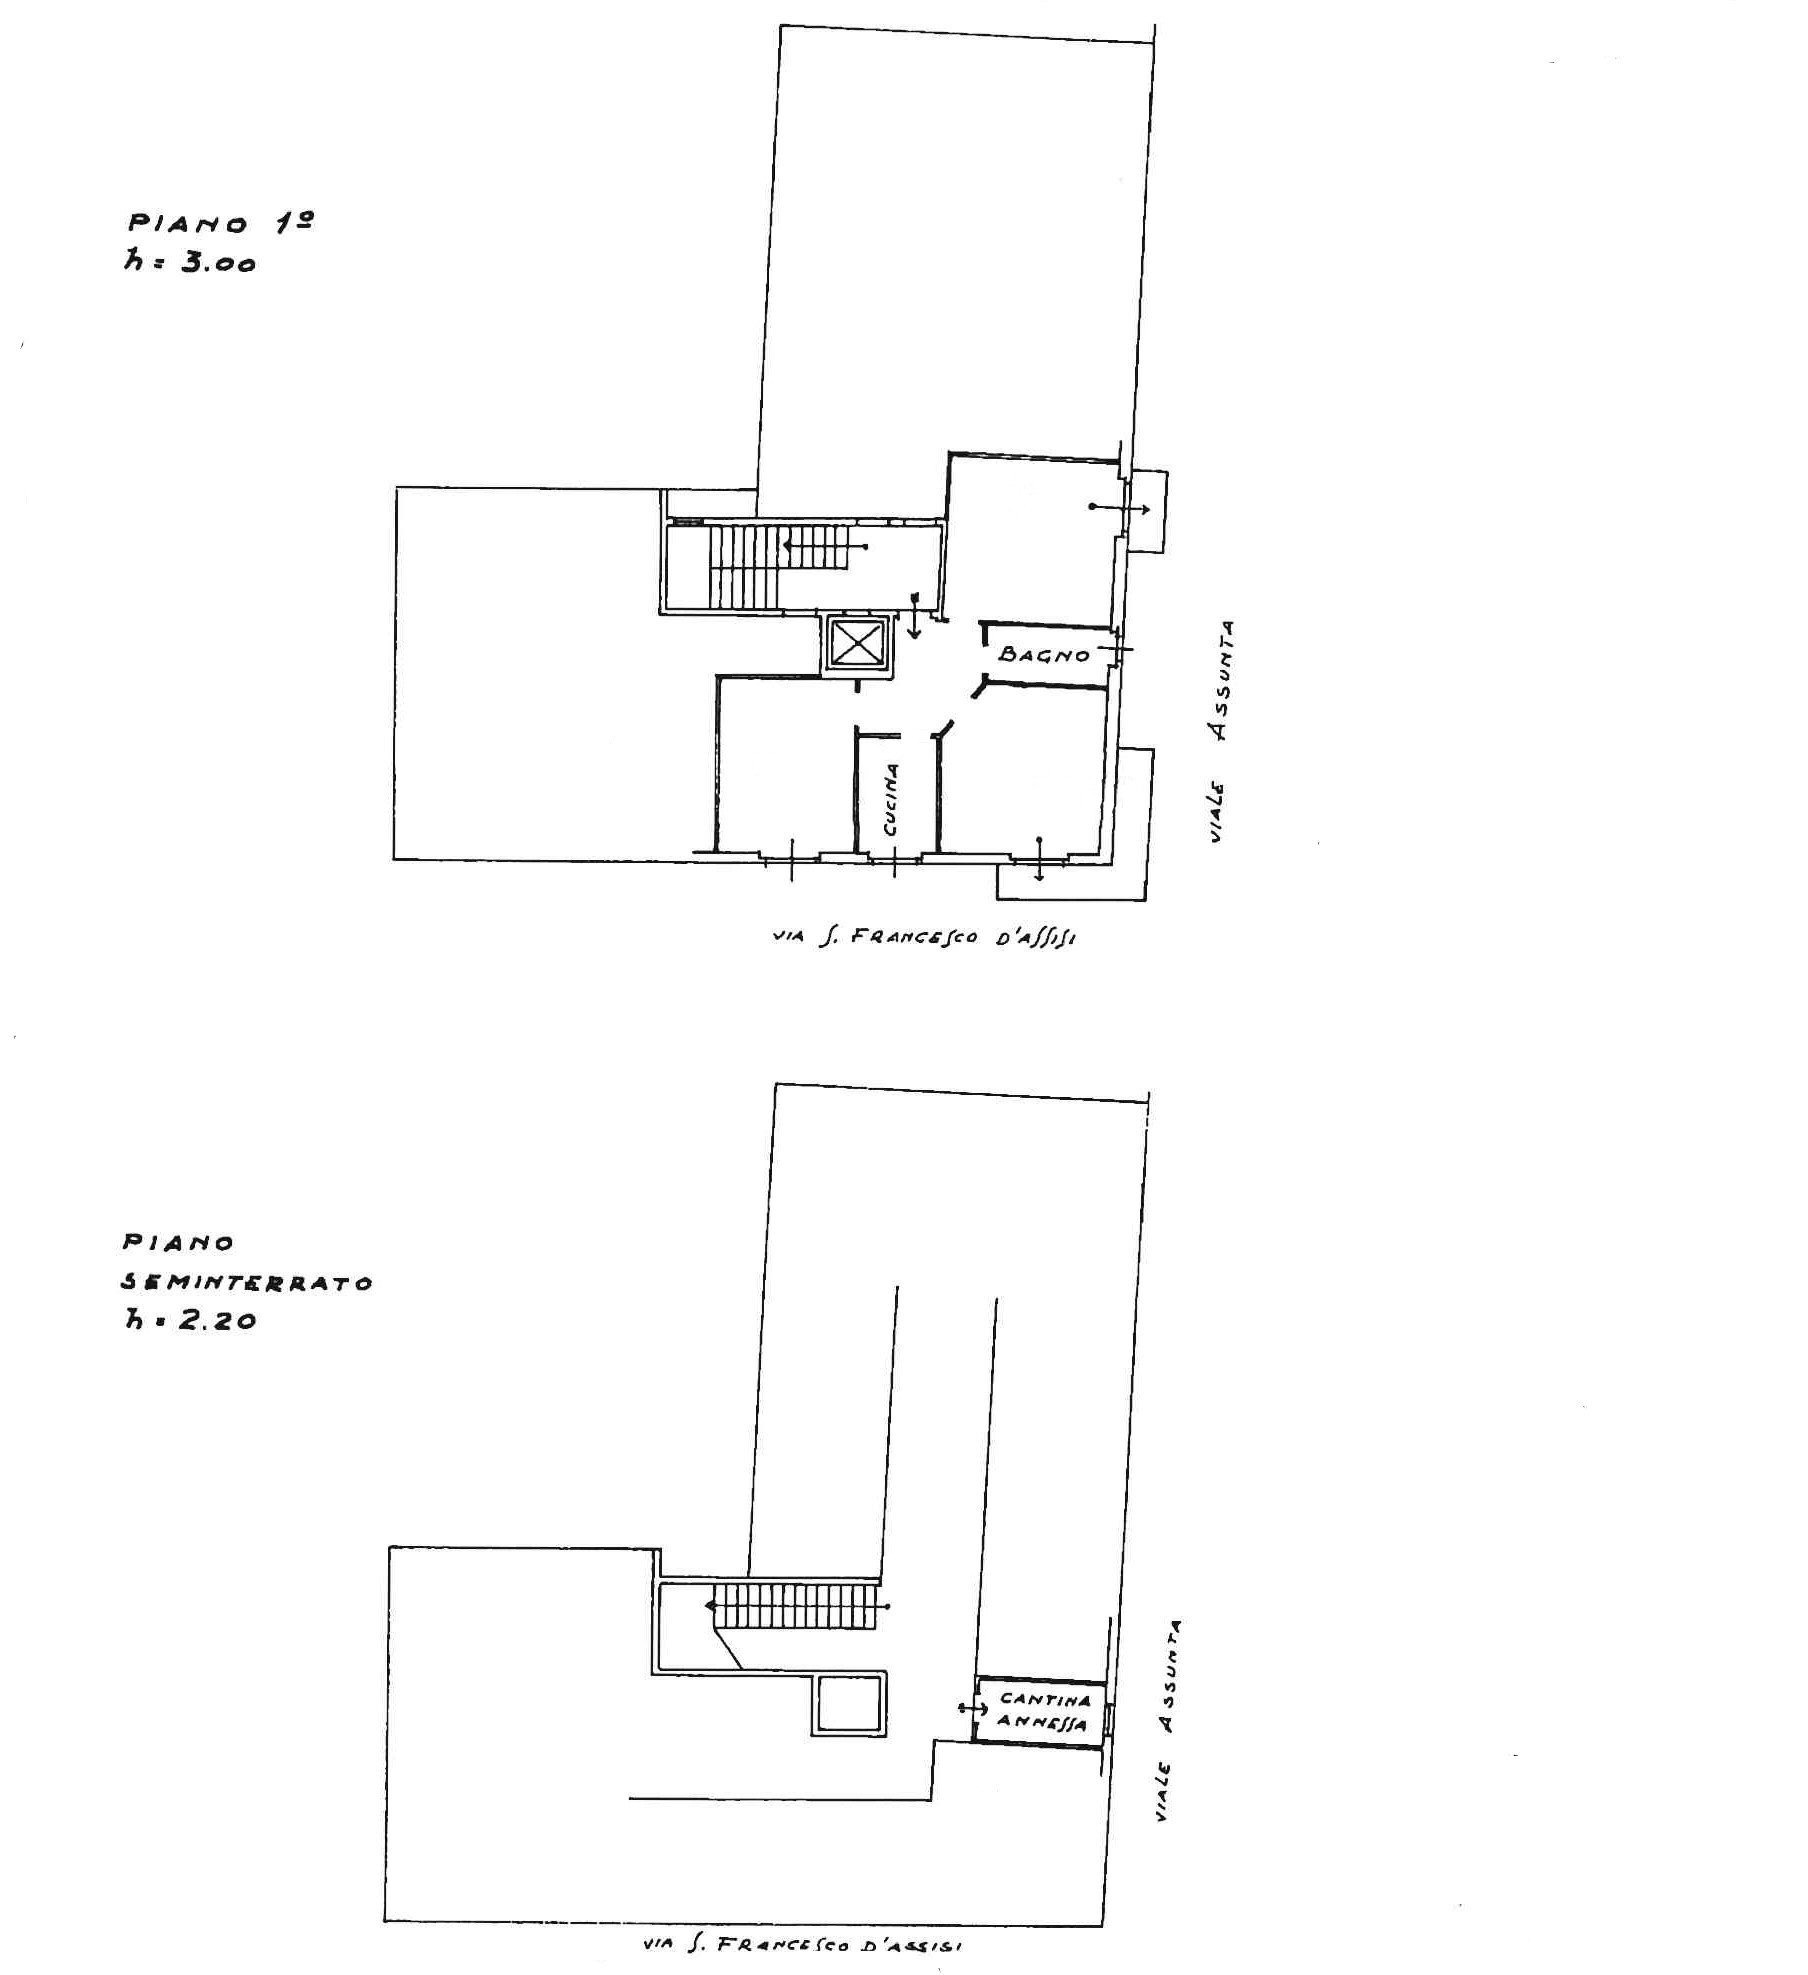 Vendita appartamento Cernusco sul Naviglio - immagine 25